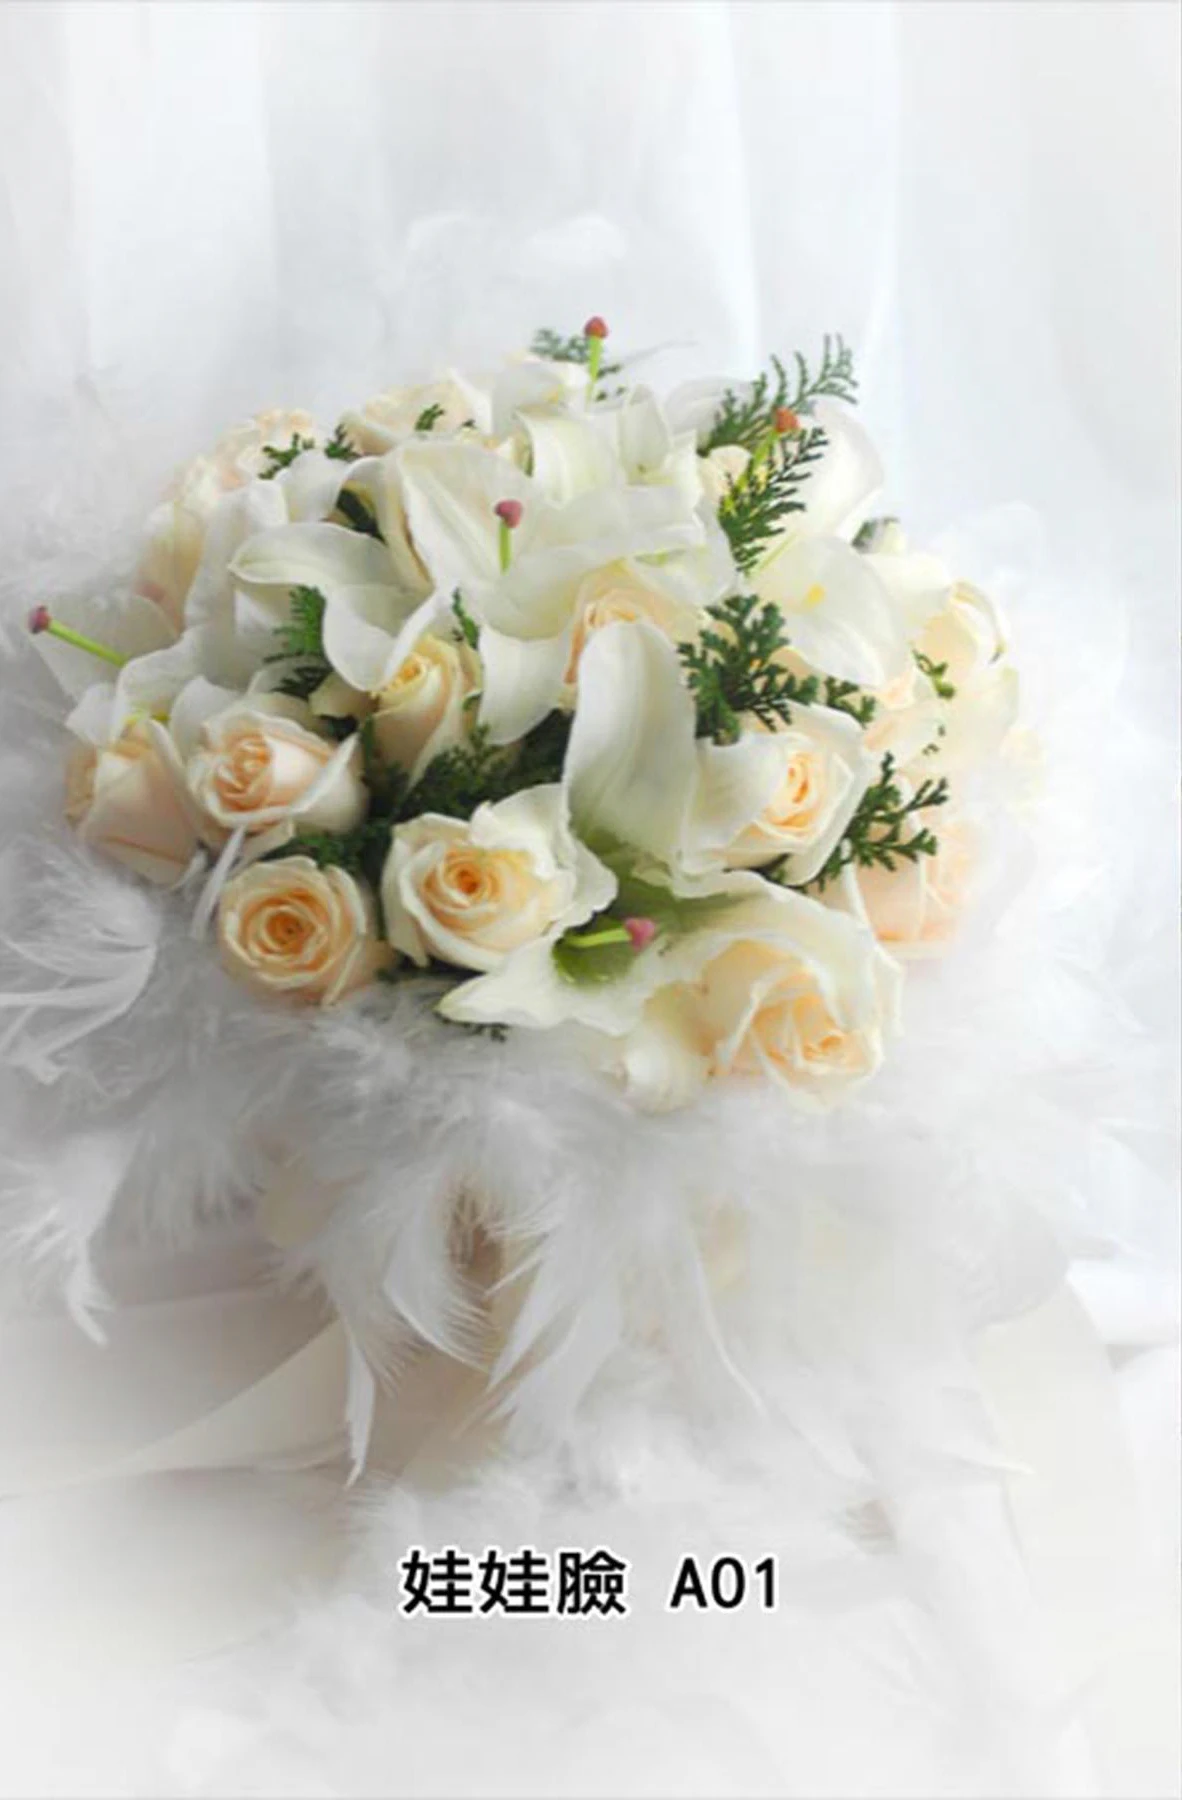 新娘捧花-花材有白玫瑰花,香水百合,白色羽毛,花束型